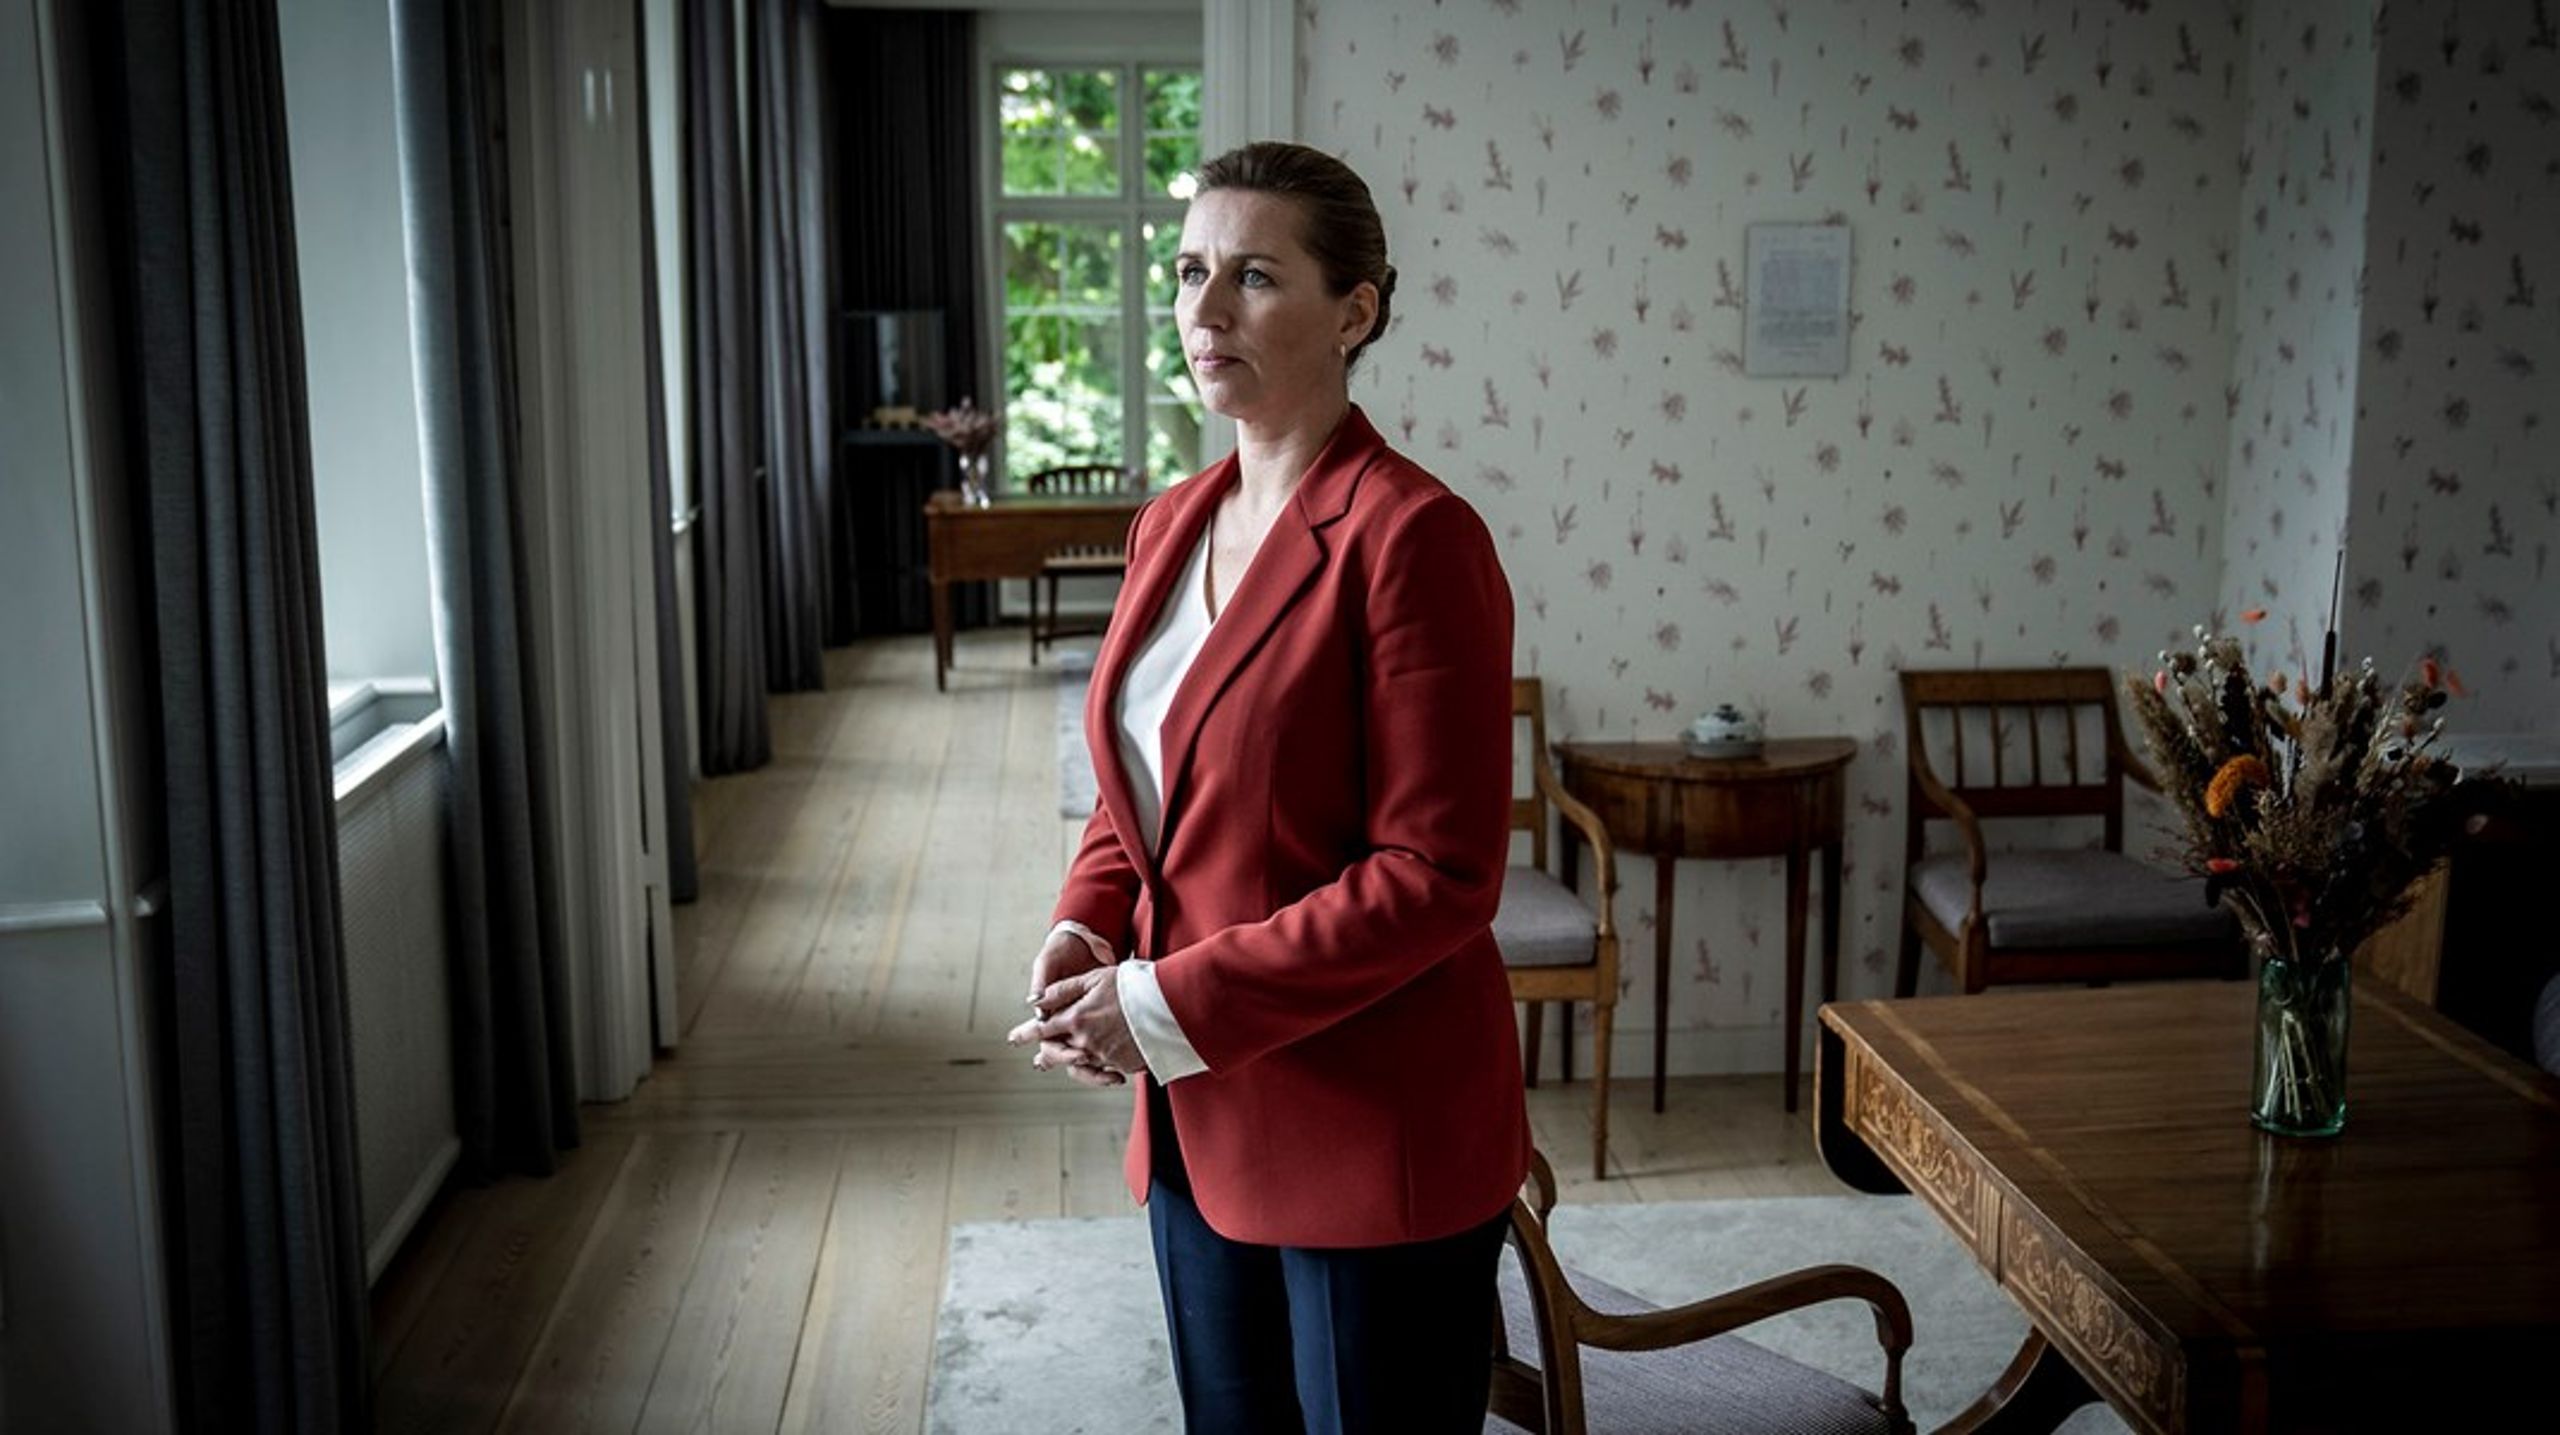 Statsminister Mette Frederiksen (S) kan leve med et image som magtfuldkommen, hvis vælgerne også ser hende som kompetent.